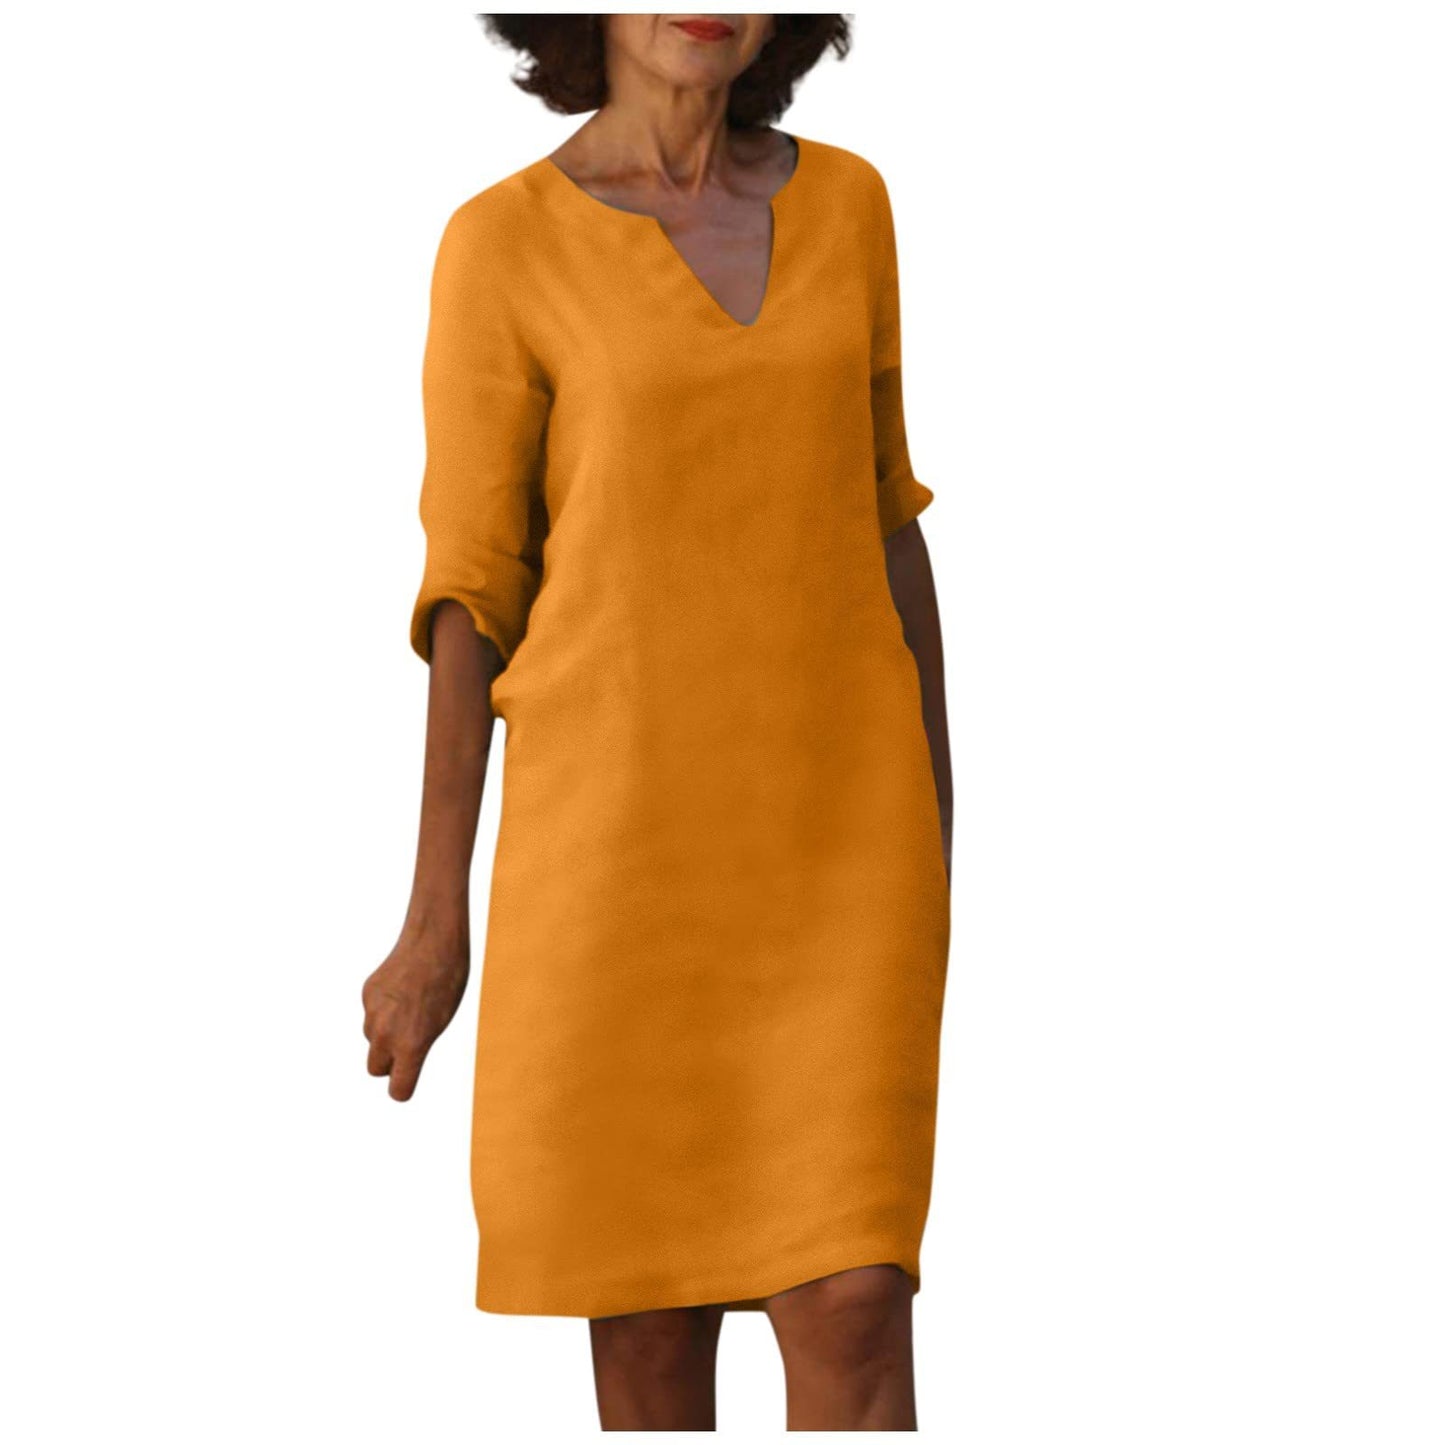 Damen Kleid aus Baumwolle und Leinen mit V-Ausschnitt und hoher Taille, Retro-Stil, reine Farbe, 34 Ärmel